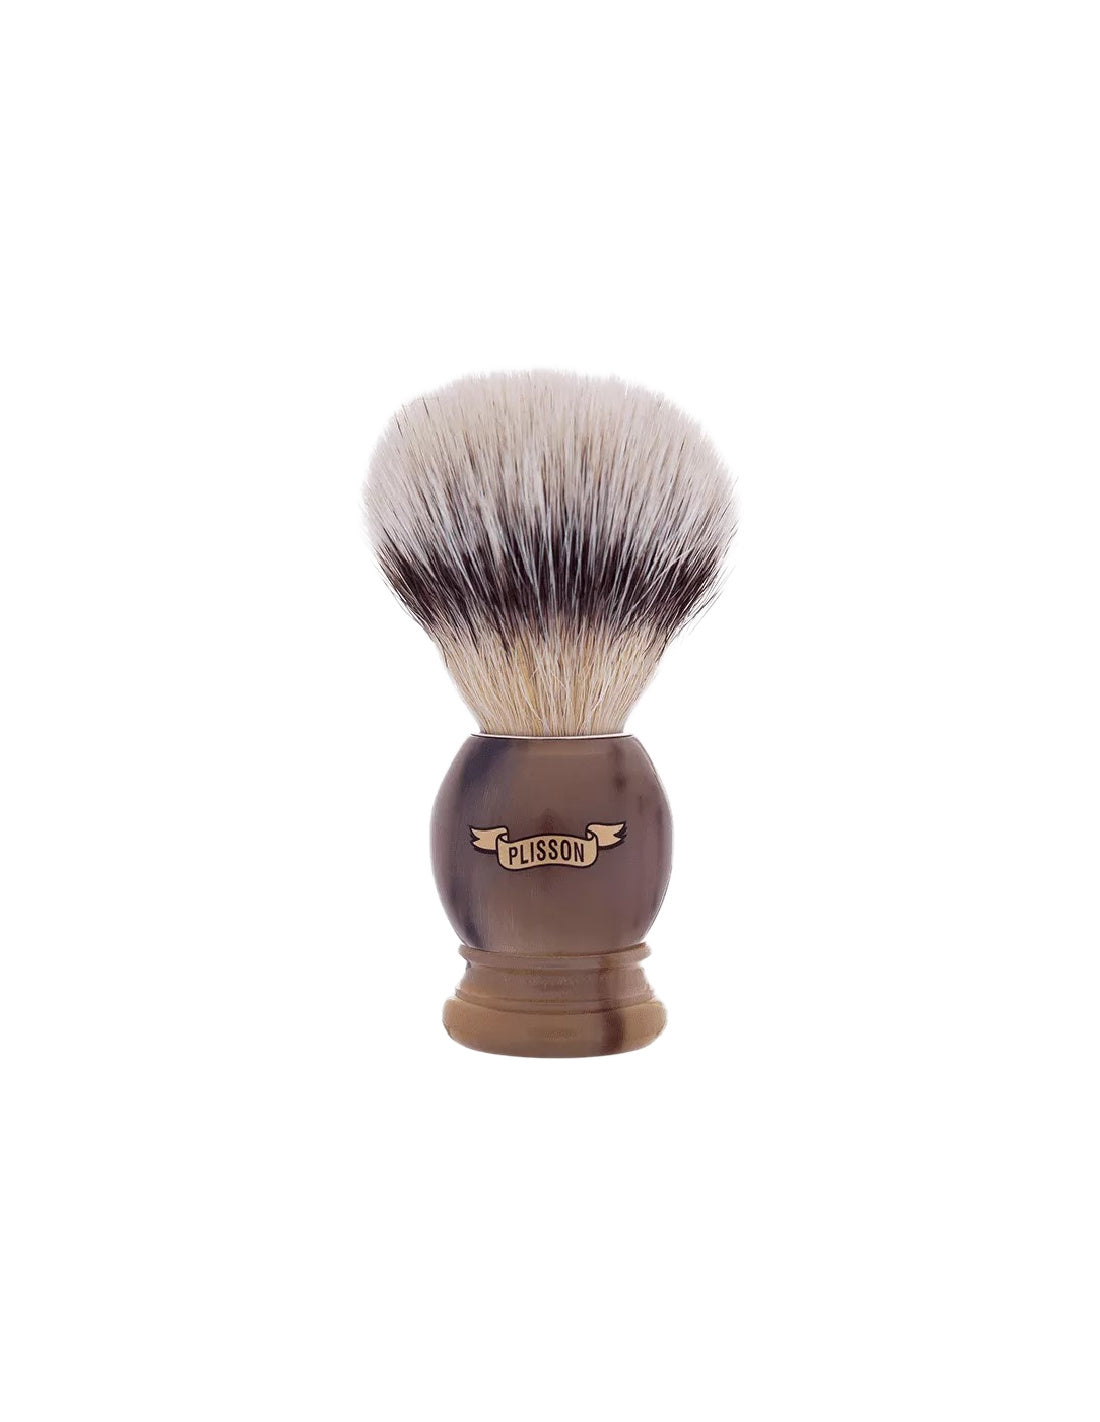 Plisson 1808 Horn Handle & White Fibre Shaving Brush